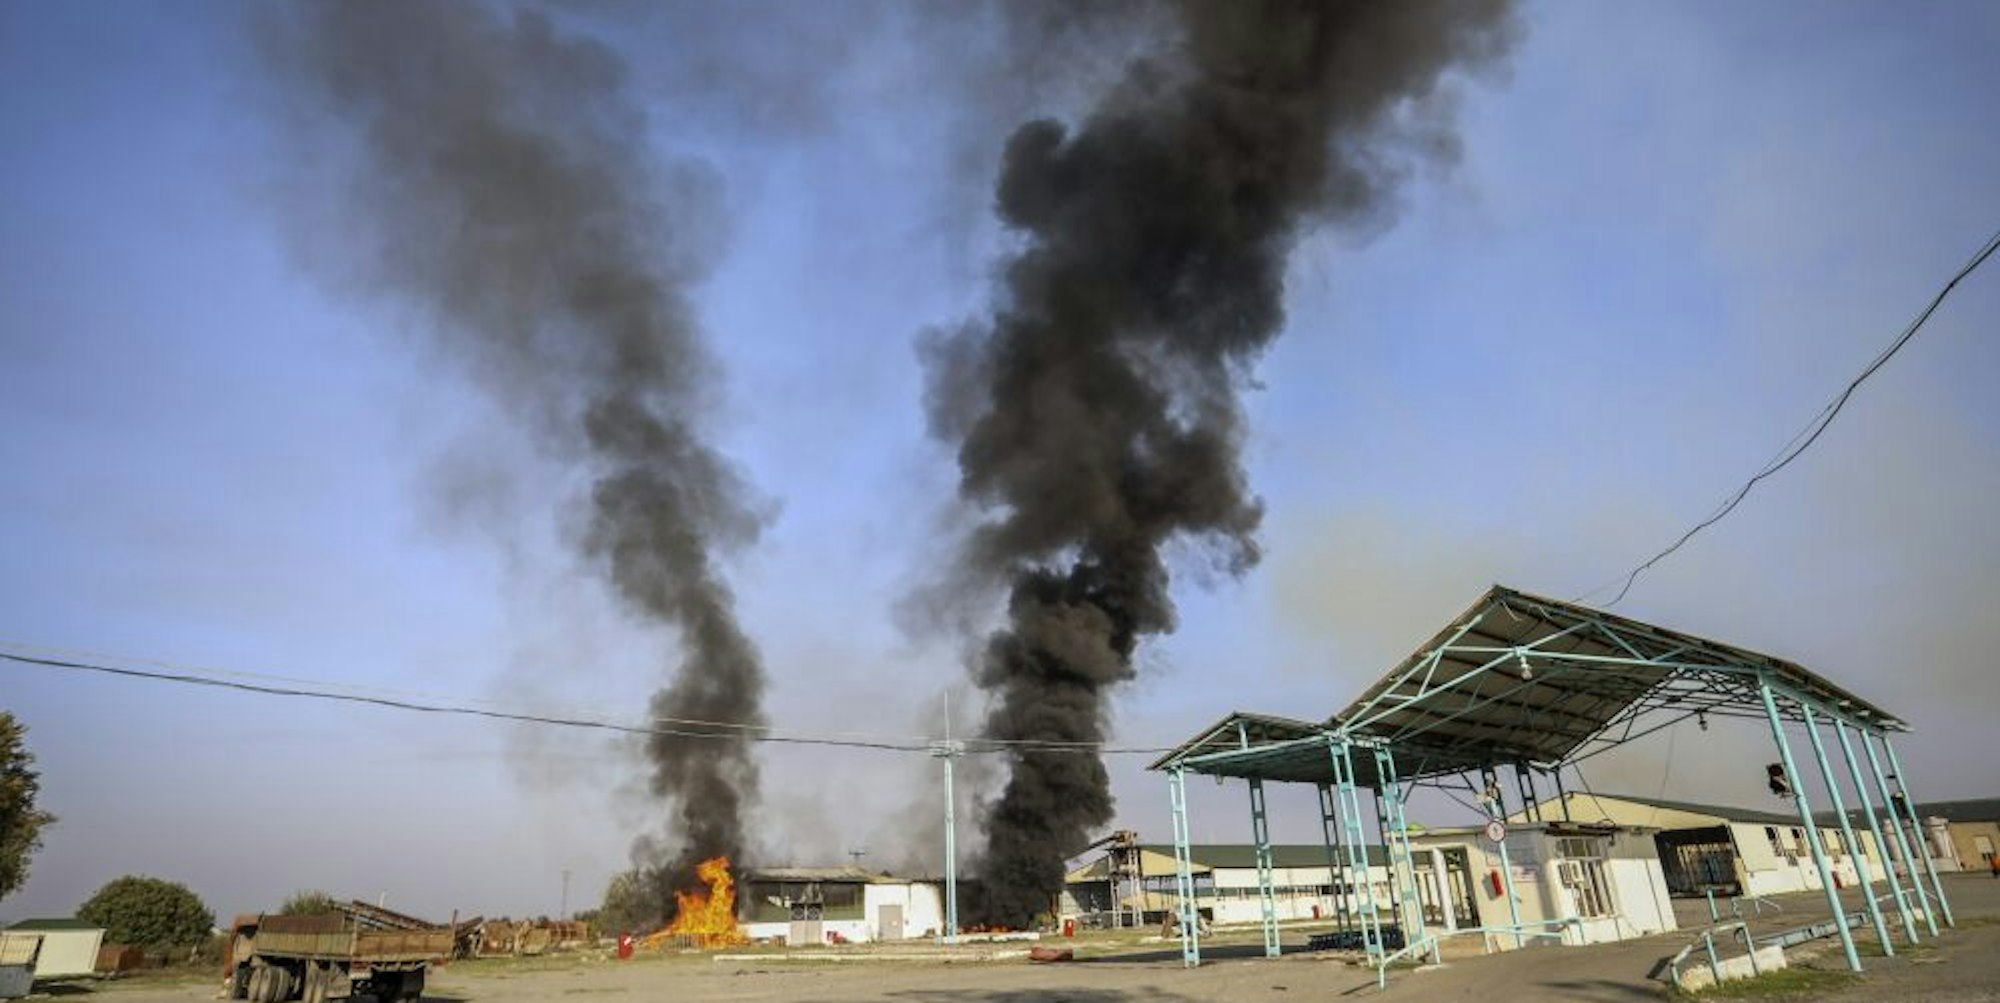 Eine brennende Fabrik nach einem Angriff in der Kaukasusregion Bergkarabach. Die Türkei steht in dem Konflikt zwischen Aserbaidschan und Armenien an der Seite Aserbaidschans.